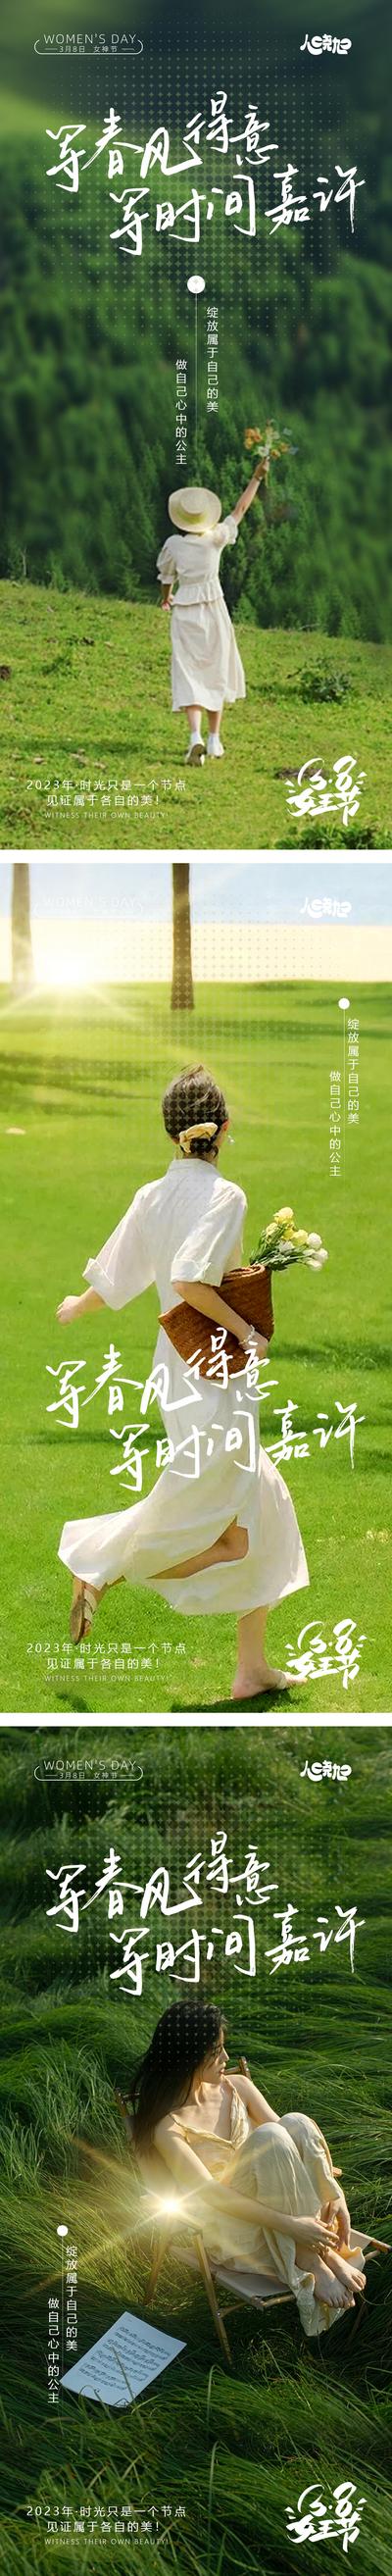 南门网 广告 海报 节日 妇女节 人物 系列 风景 背影 花 公历 清新 系列